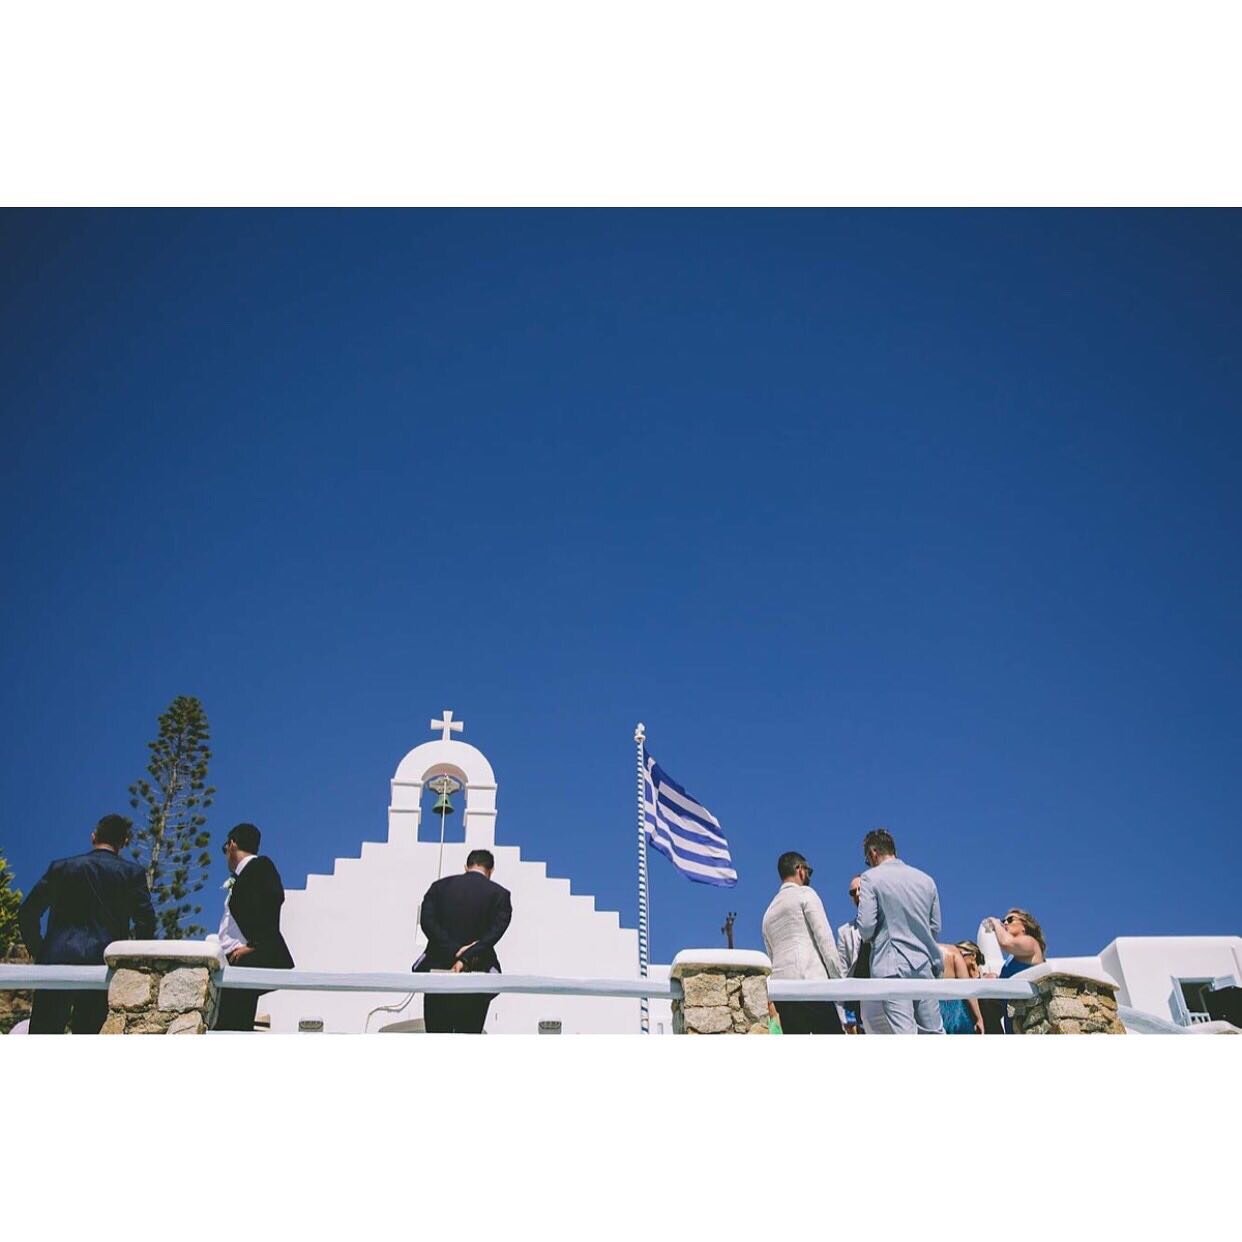 #mykonosweddings #greekislandweddings #santoriniweddings #mykonosweddingphotographer #santoriniweddingphotographer #saintjohnresortmykonos #saintjohnresort #retzonisweddings